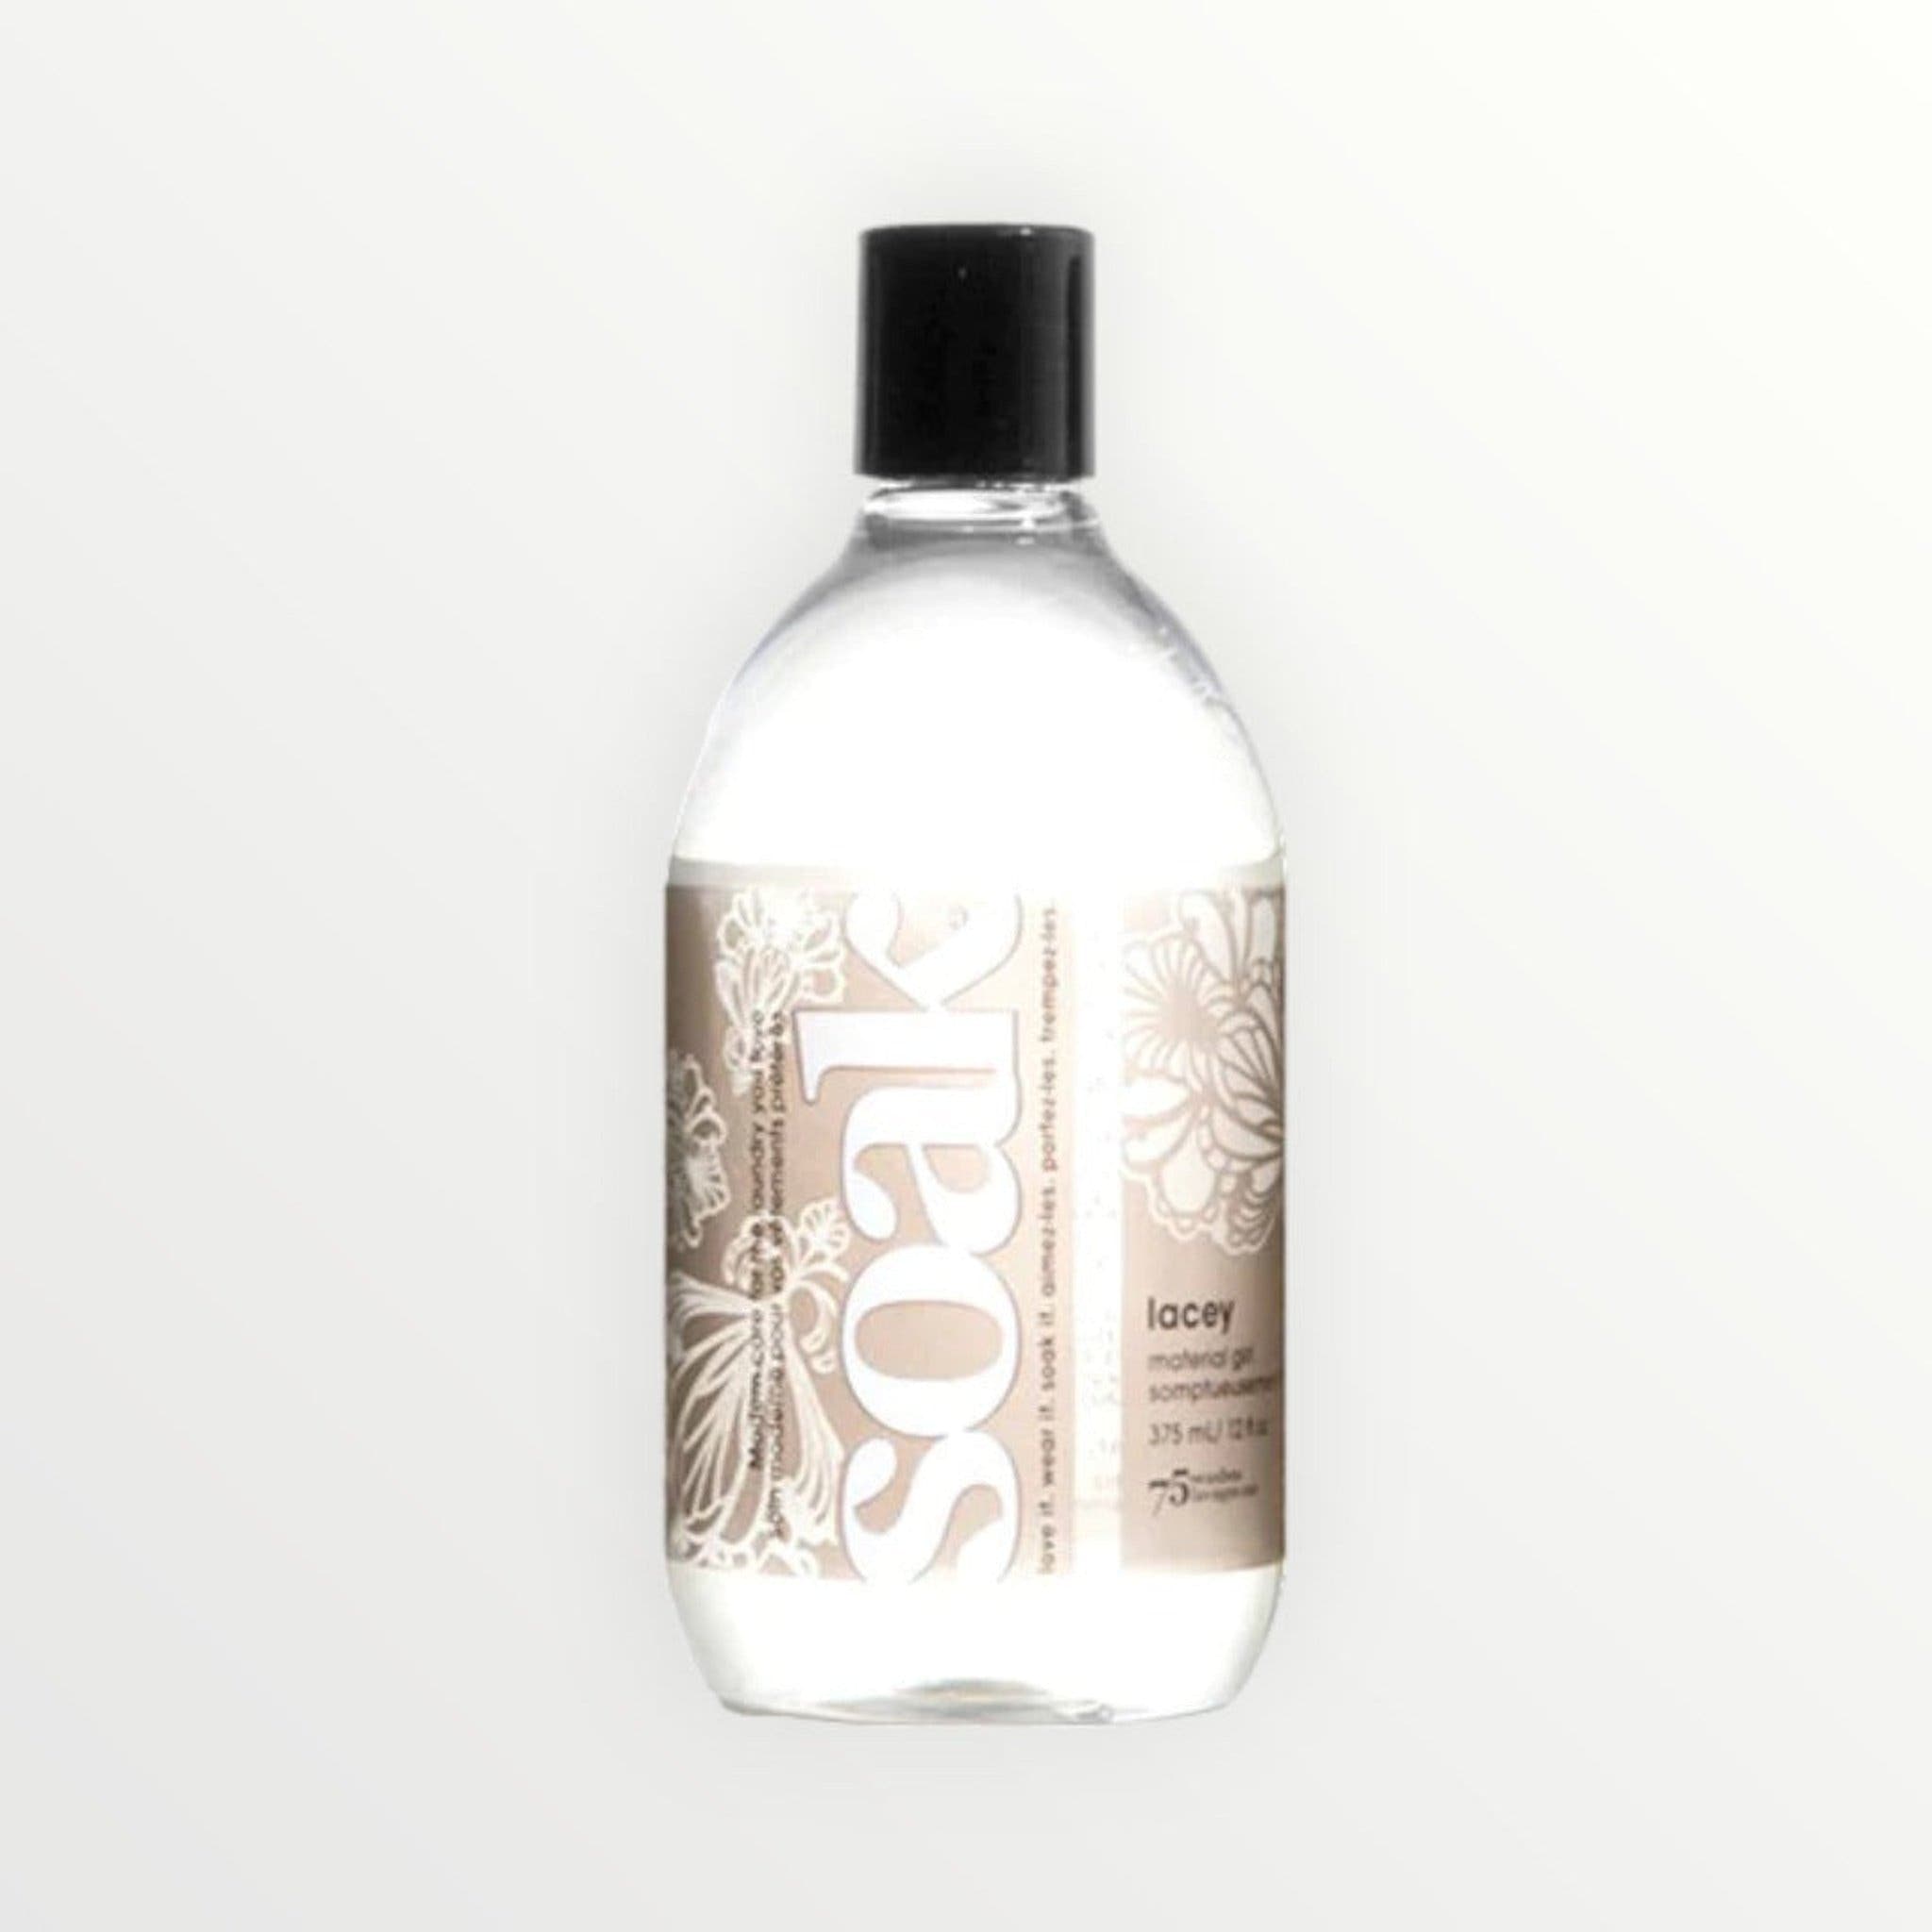 SOAK Lingerie Wash by Soak Wash, Lacey Scent, 375ml Bottle